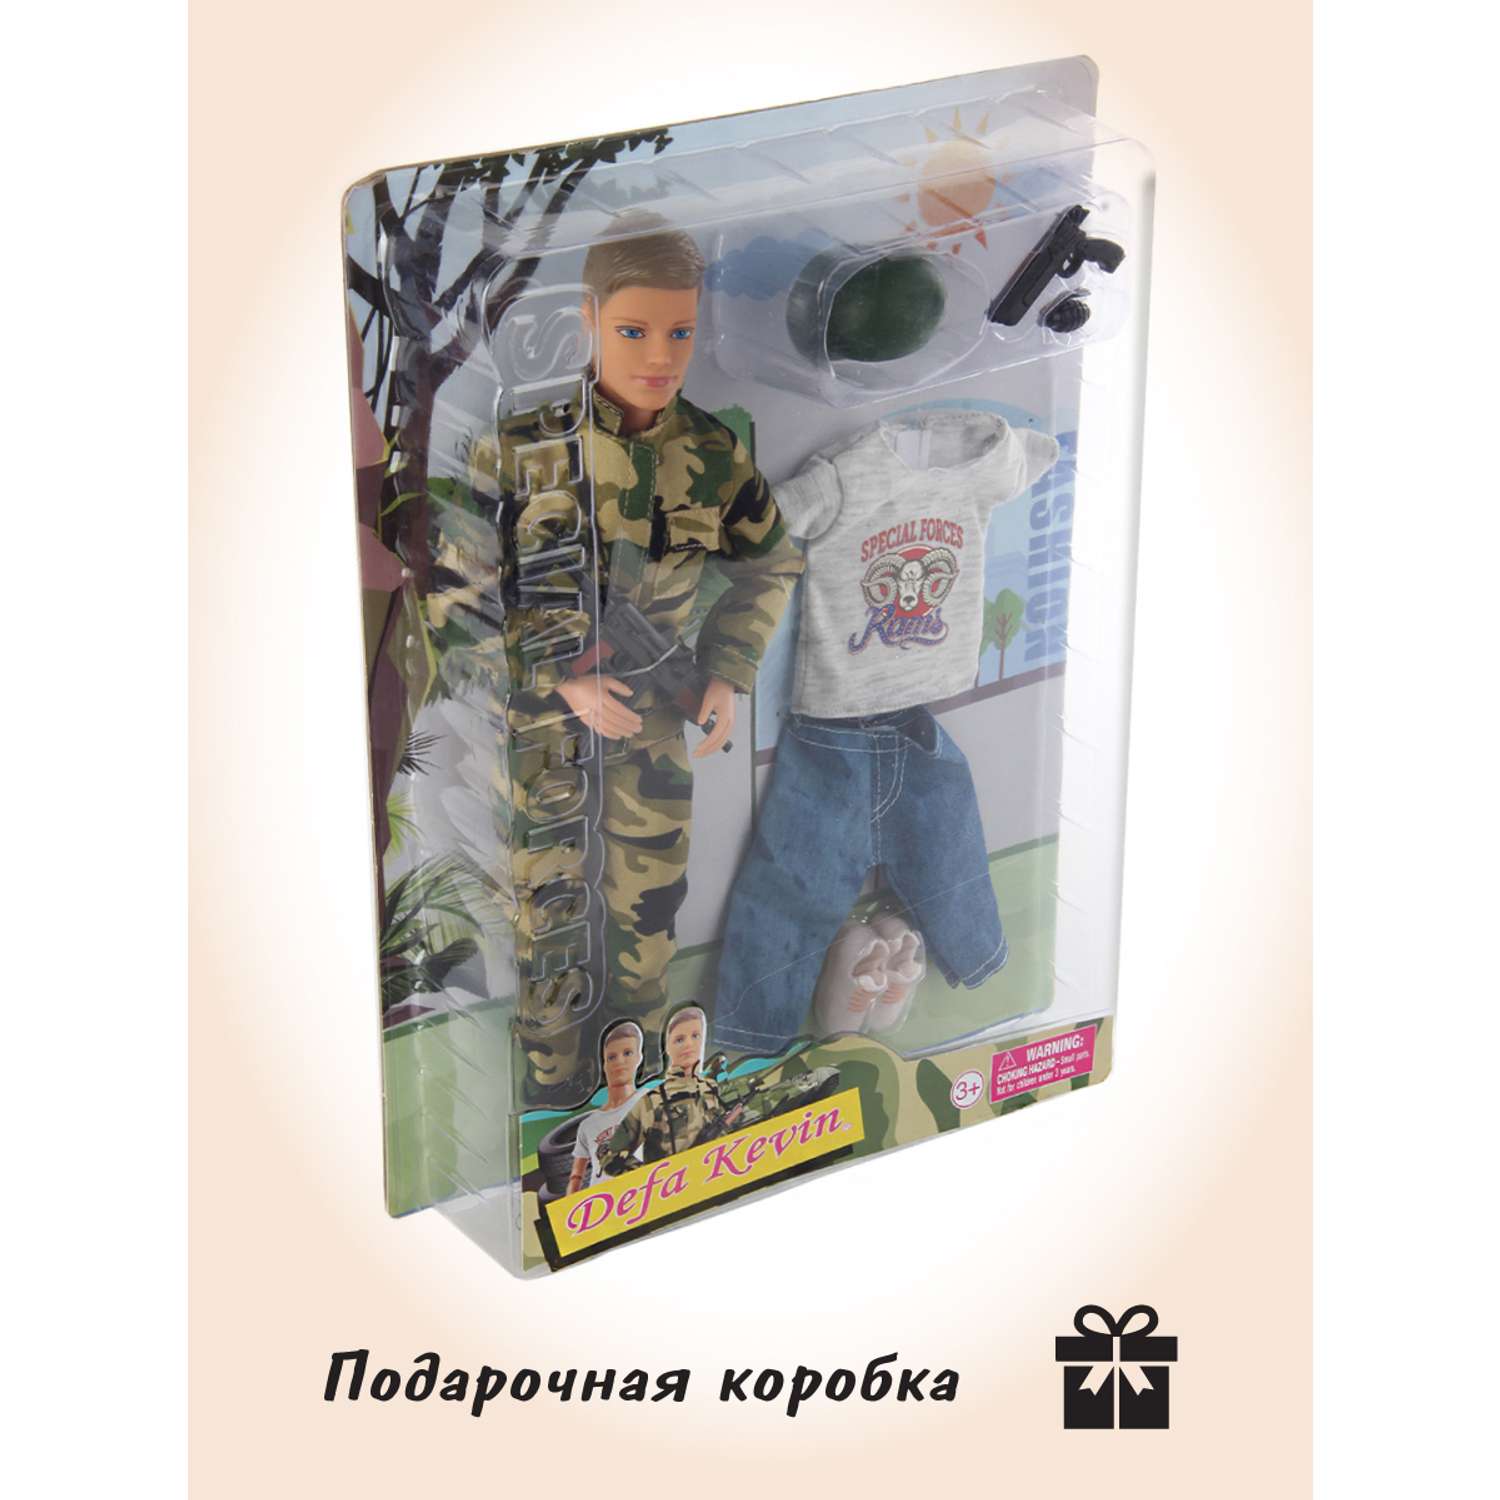 Кукла Кен Veld Co солдат 91550 - фото 8